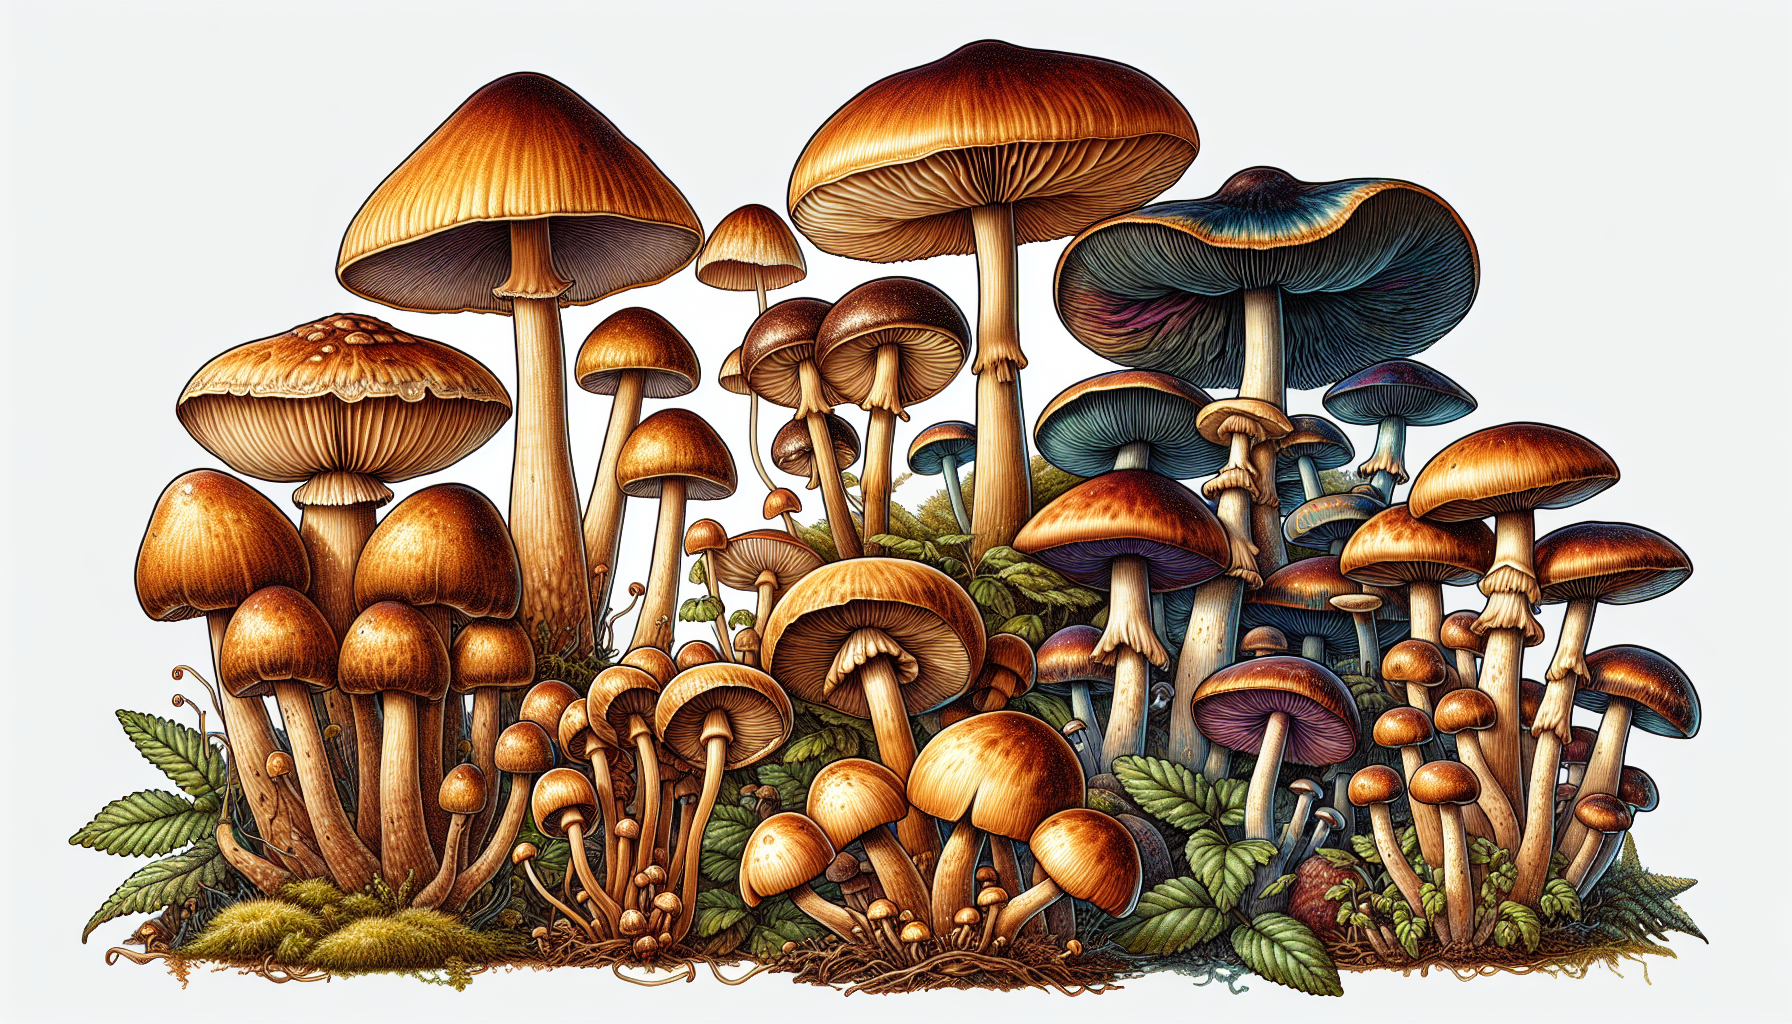 Illustration of various magic mushroom strains